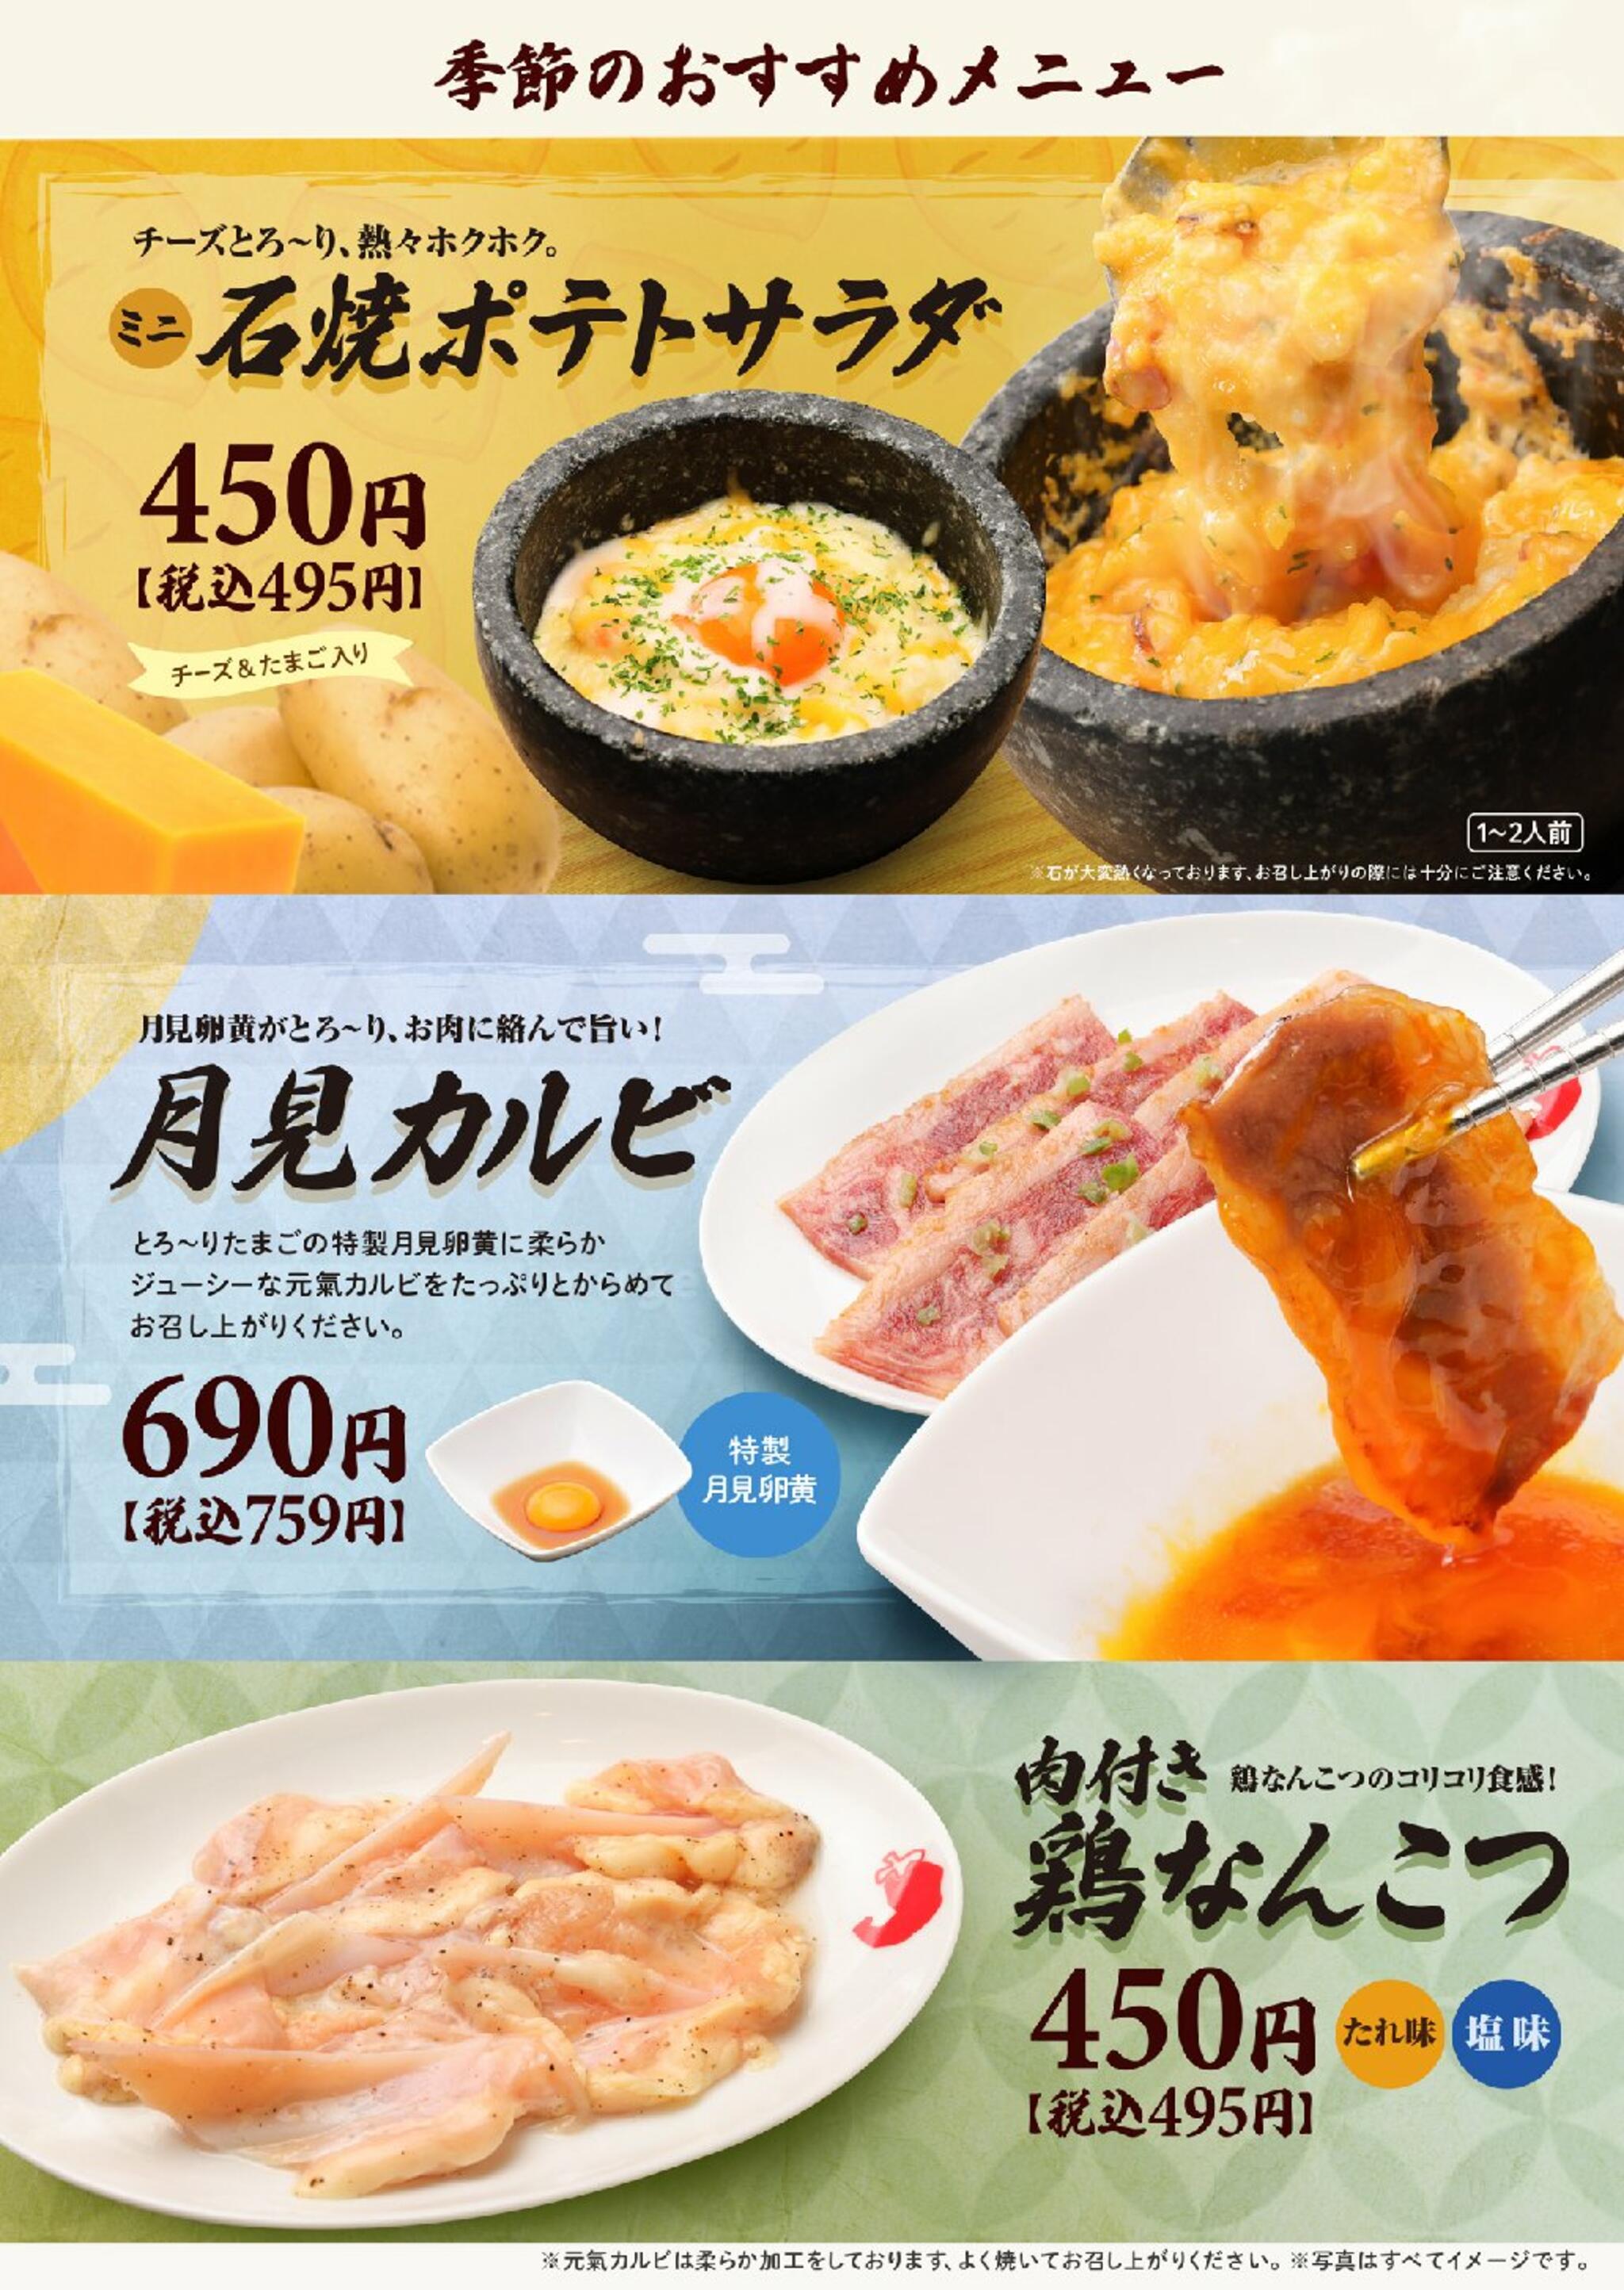 焼肉冷麺やまなか家 泉松森店からのお知らせ(☆★☆ 季節のおすすめメニュー ☆★☆)に関する写真